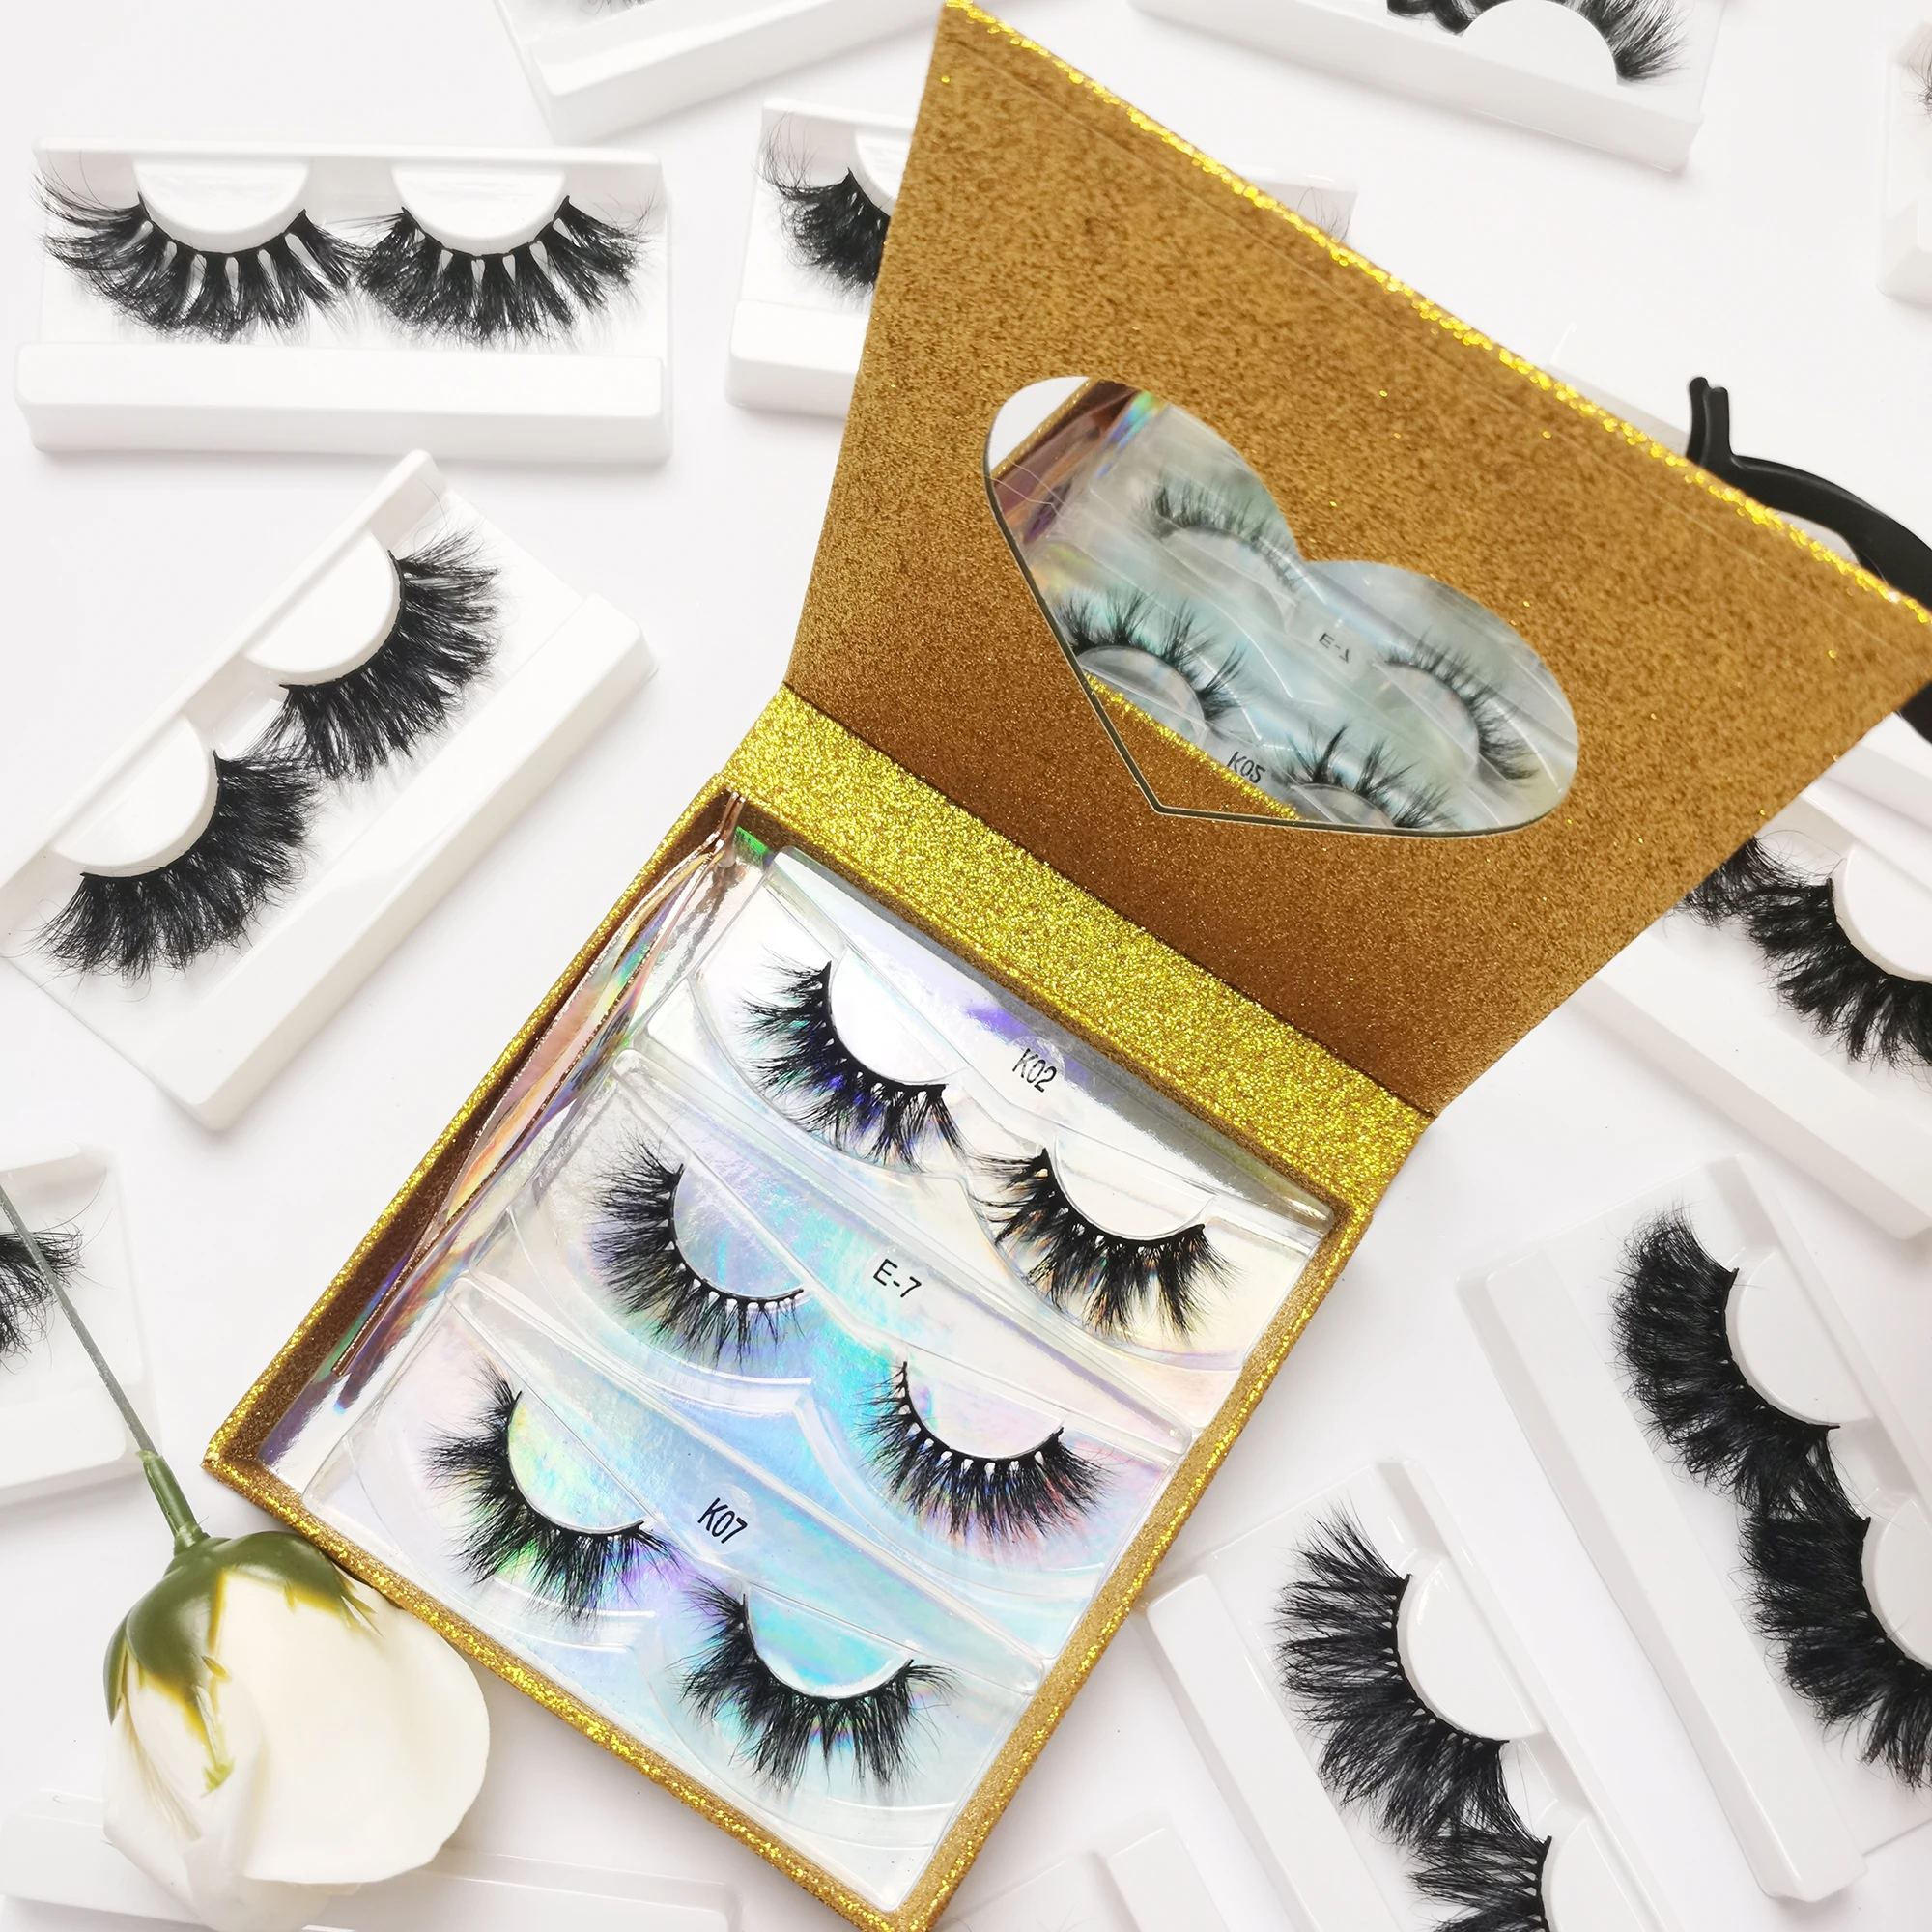 

Best Seller Custom Eyelash Packaging Box 100% Real 3d Mink Eyelashes Private Label 25mm Mink Lashes Lash Vendor, Natural black